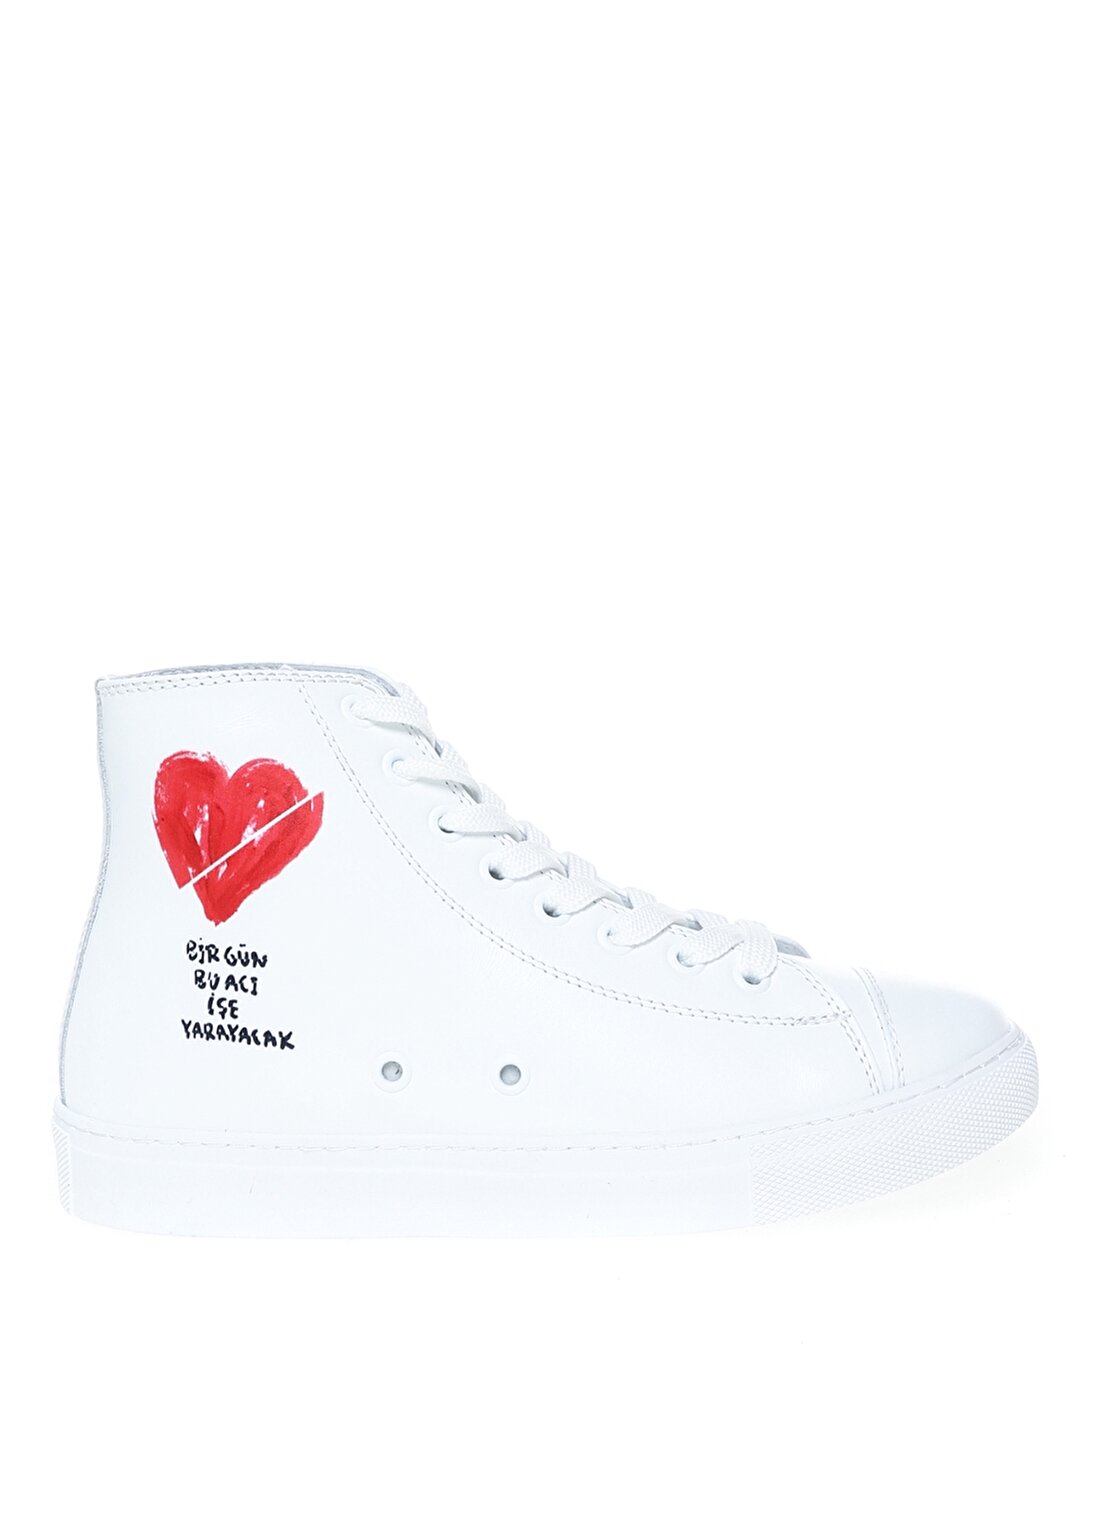 Cem Güventürk X Boyner Beyaz Kadın Bilekli Günlük Ayakkabı KALP